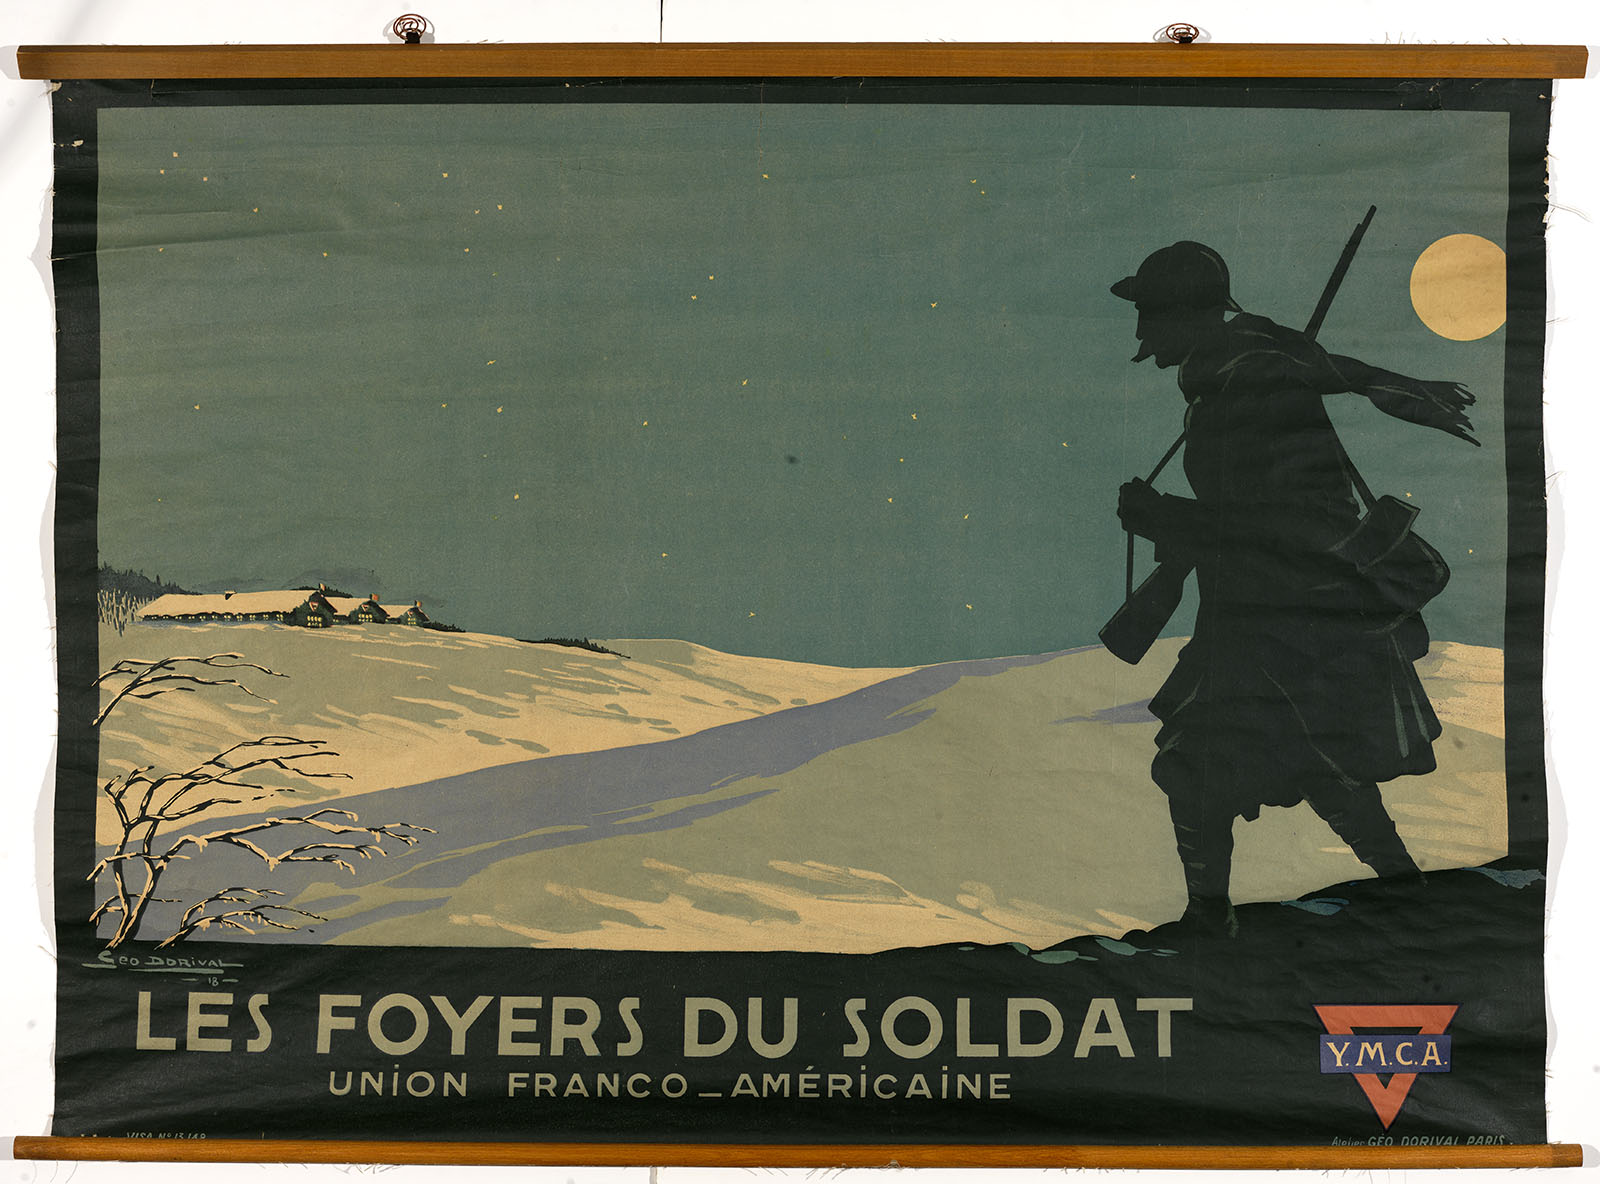 Géo. Dorival, Les Foyers du Soldat- Union Franco-Américaine. Y.M.C.A. (Paris, 1918). Color lithograph. Gift of Mrs. Franklin S. Edmonds.